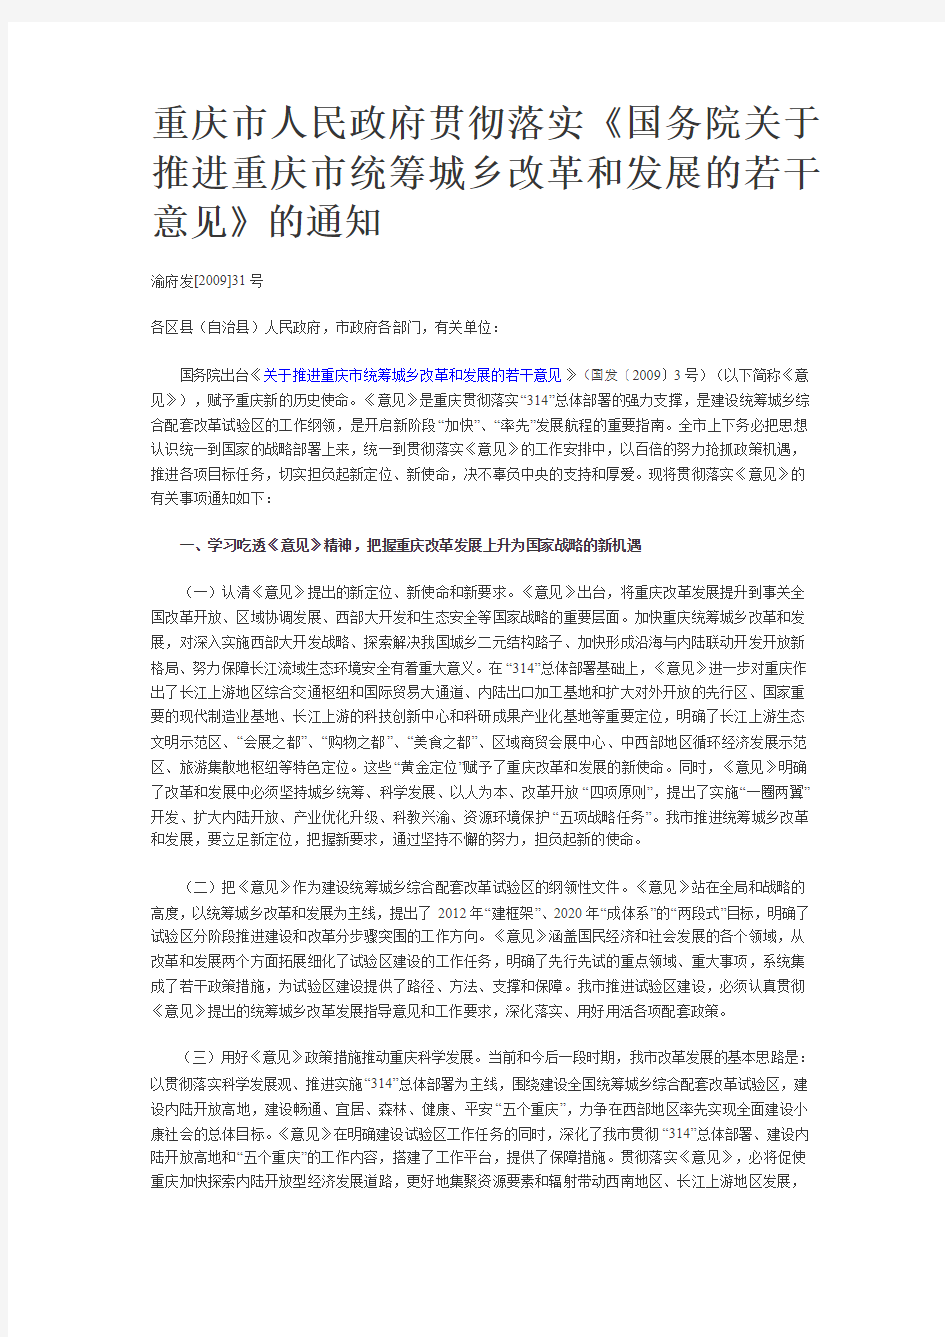 重庆市人民政府贯彻落实推进重庆市统筹城乡改革和发展的若干意见